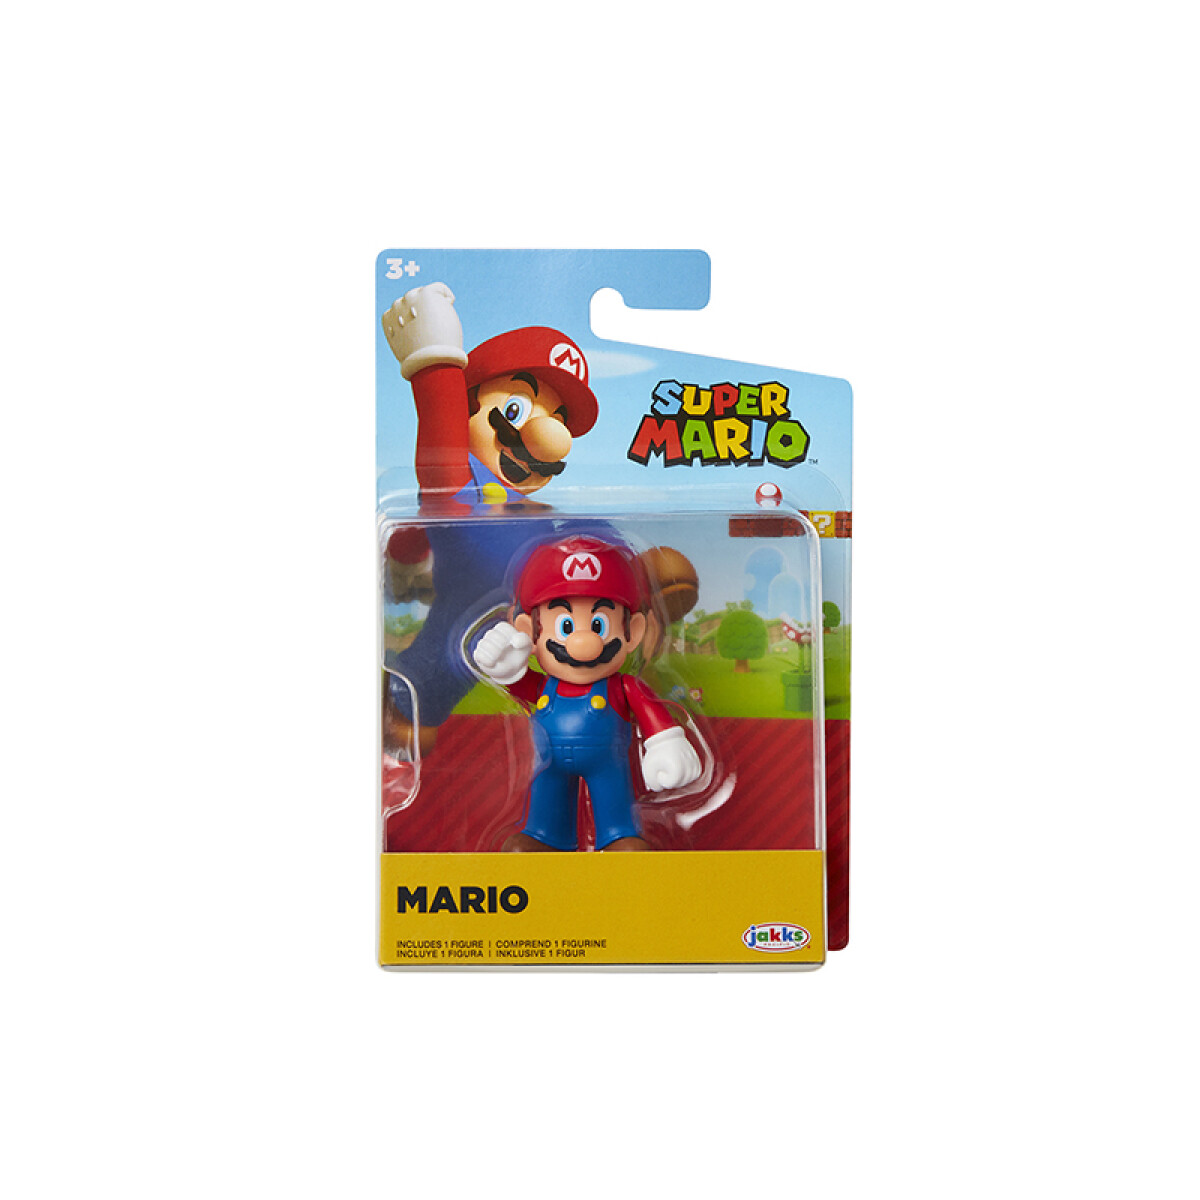 Super Mario - Mario 